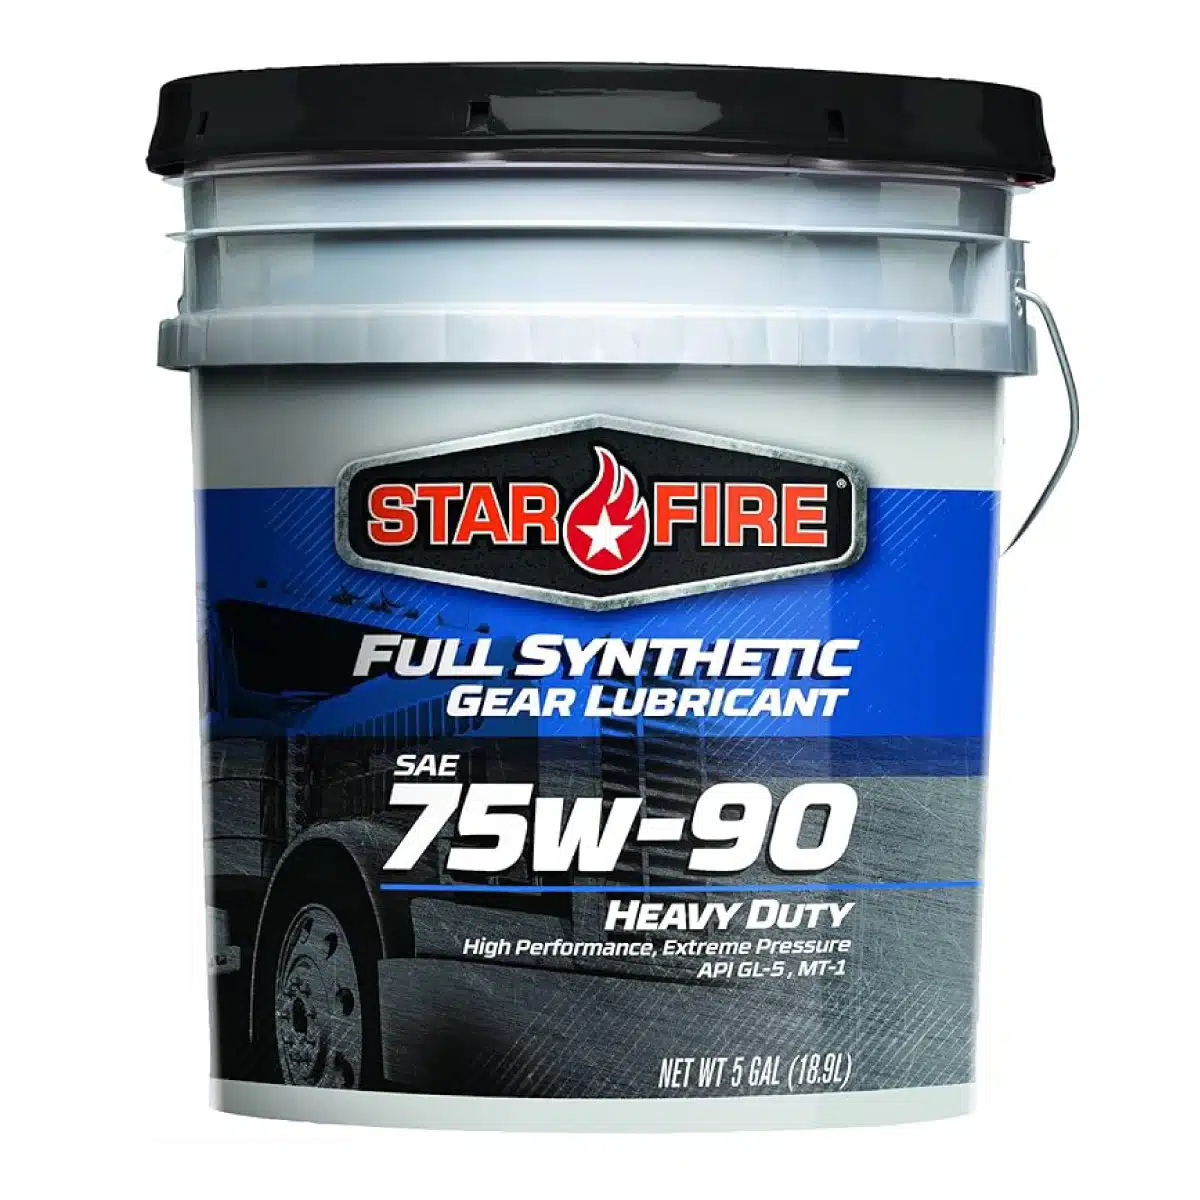 35lb pail Full Synthetic Gear Lubricants 75W-90